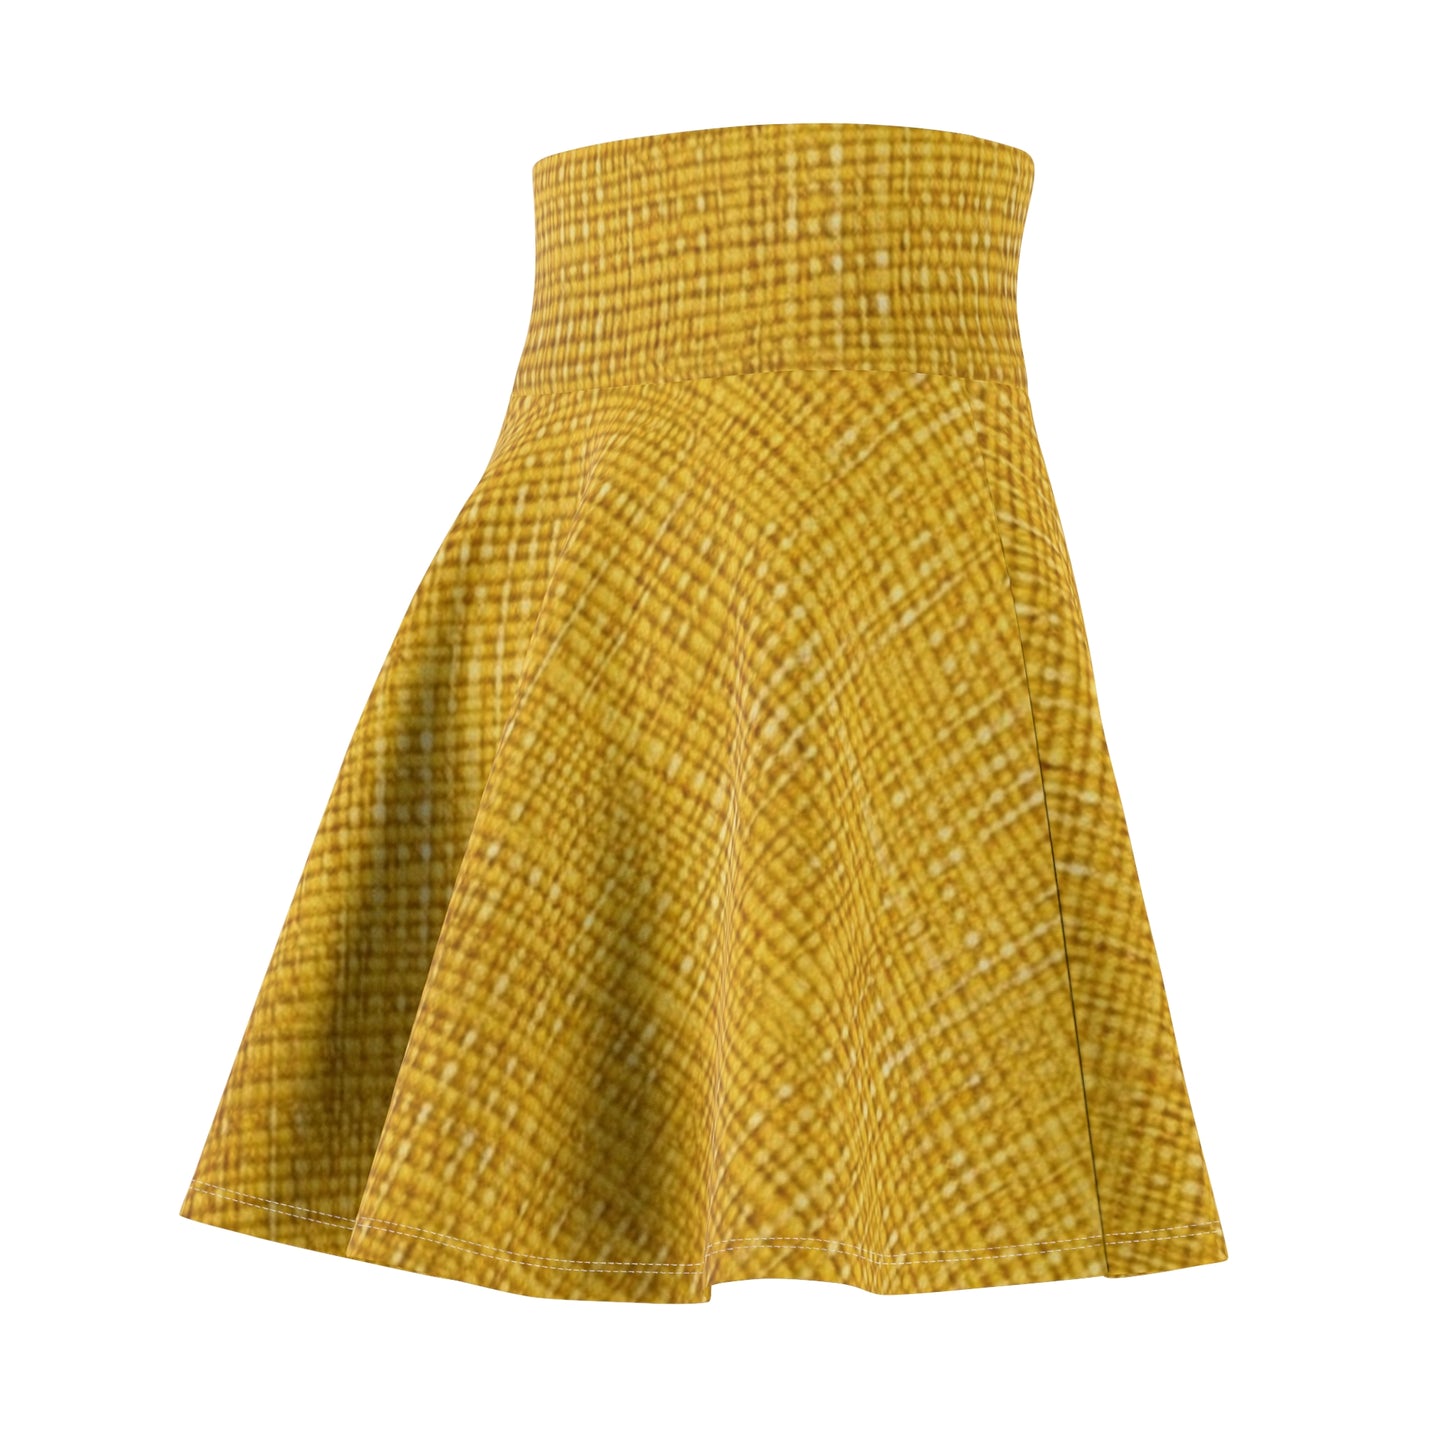 Radiant Sunny Yellow: Denim-Inspired Summer Fabric - Women's Skater Skirt (AOP)